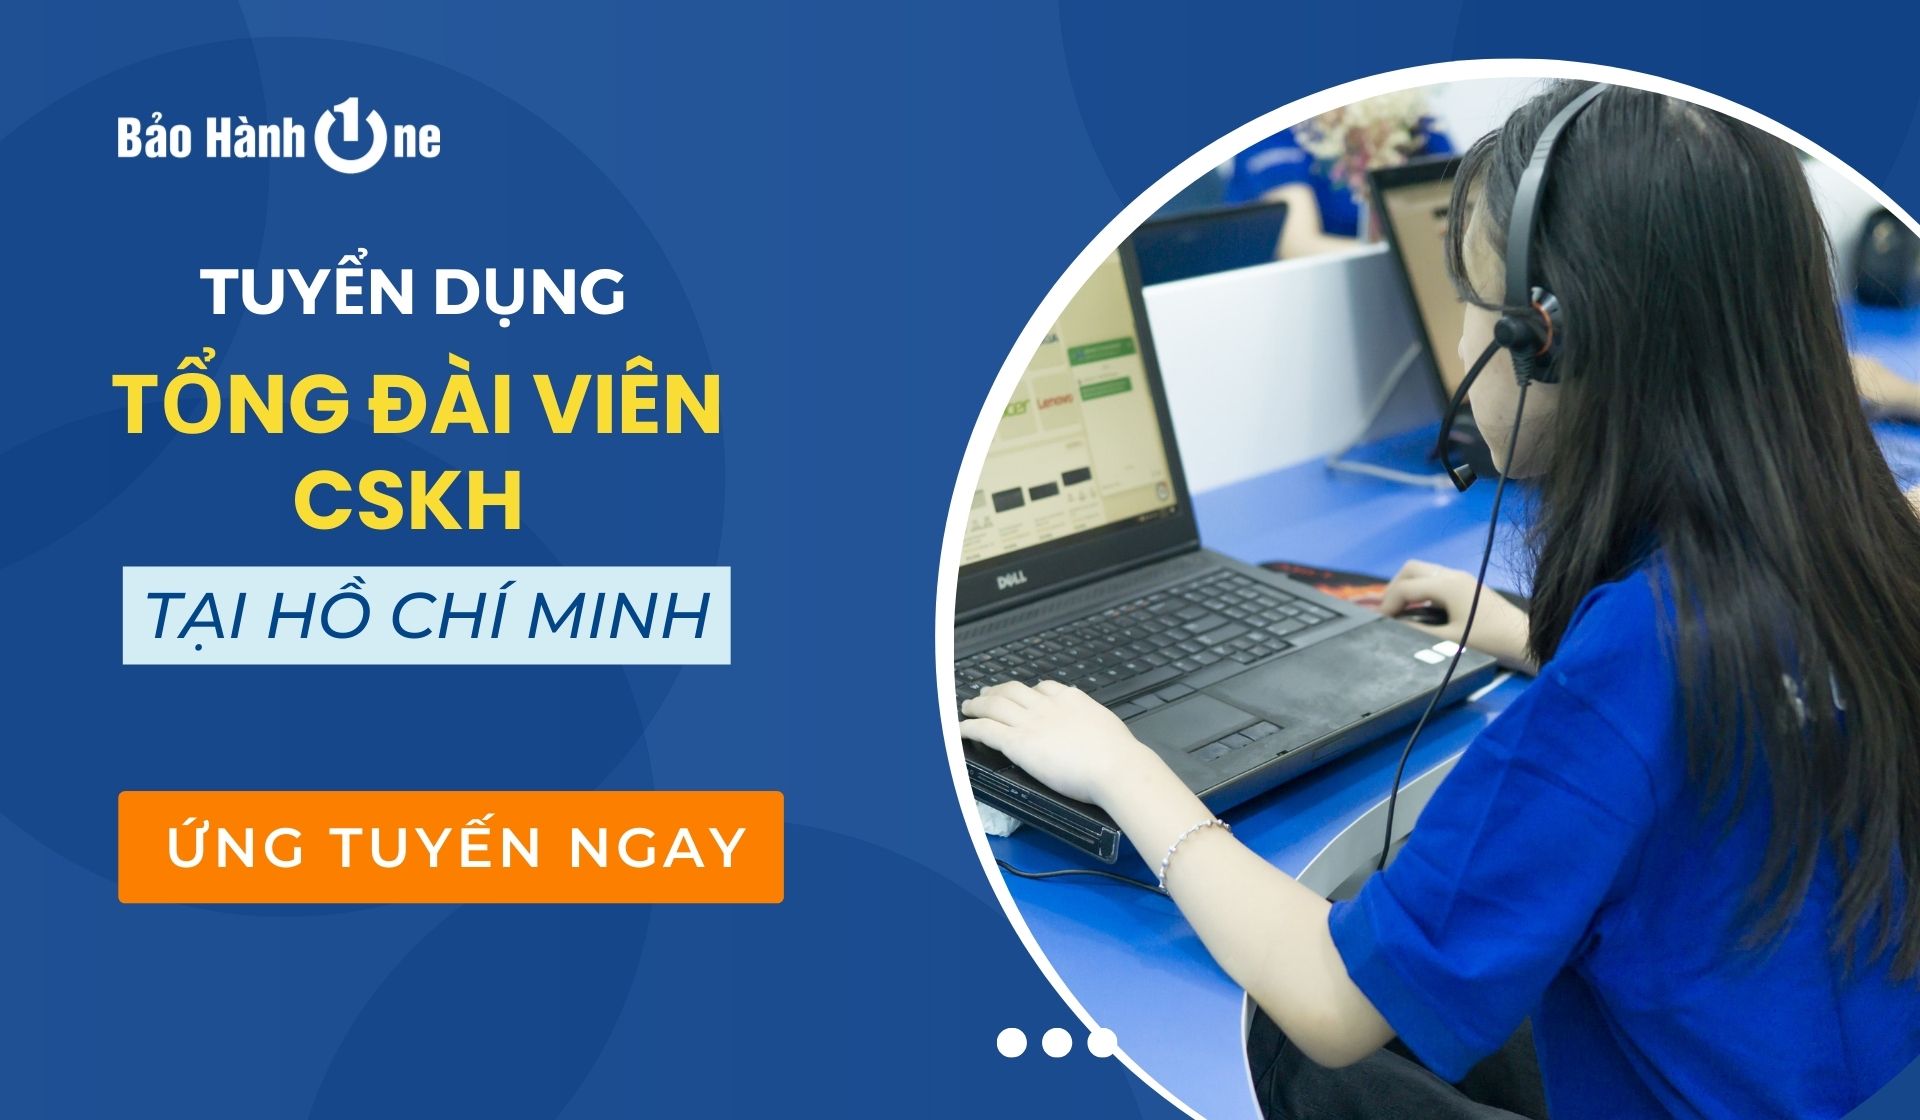 Tuyển dụng Tổng Đài Viên chăm sóc khách hàng lương cao tại Hồ Chí Minh